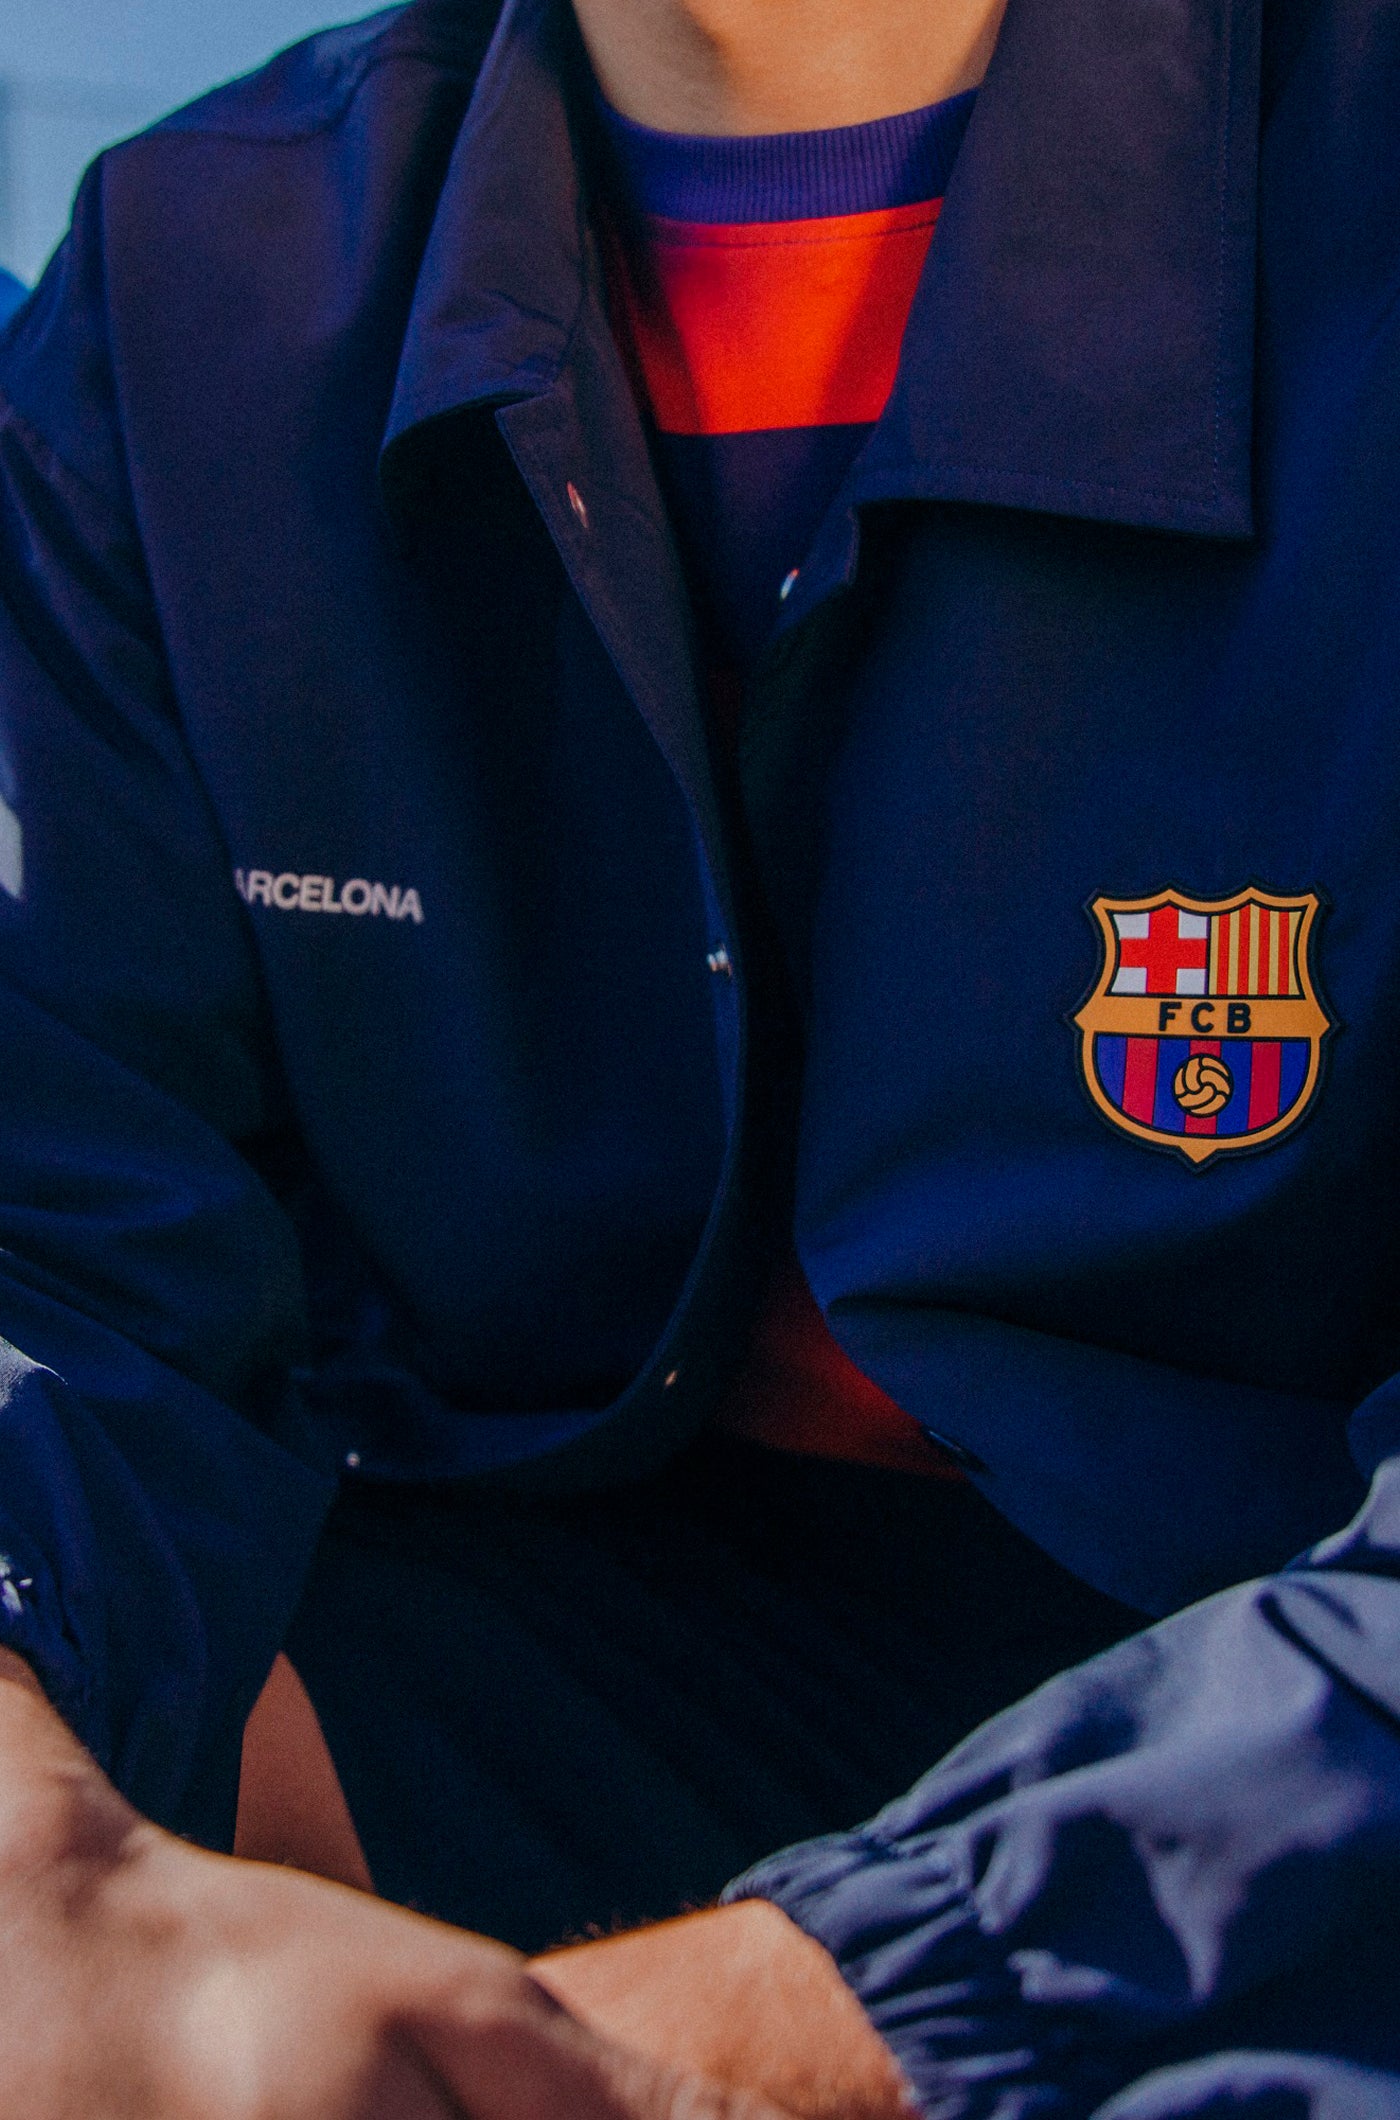 Geknöpfte Jacke des FC Barcelona